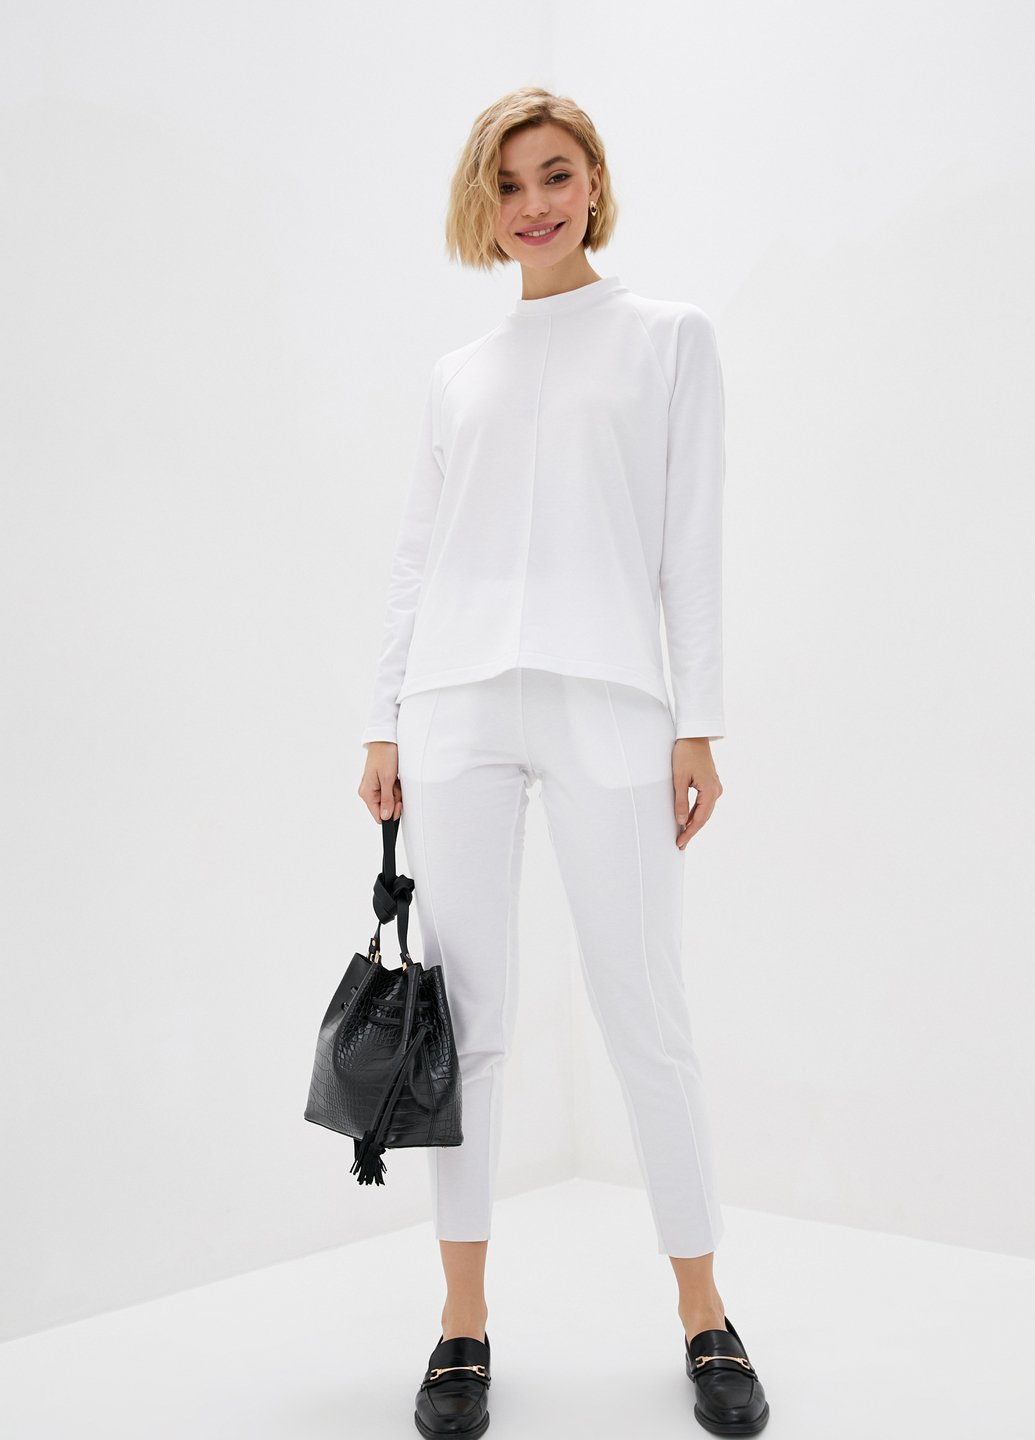 Купить Летний костюм женский белого цвета Merlini Питерборо 100000080, размер 42-44 в интернет-магазине